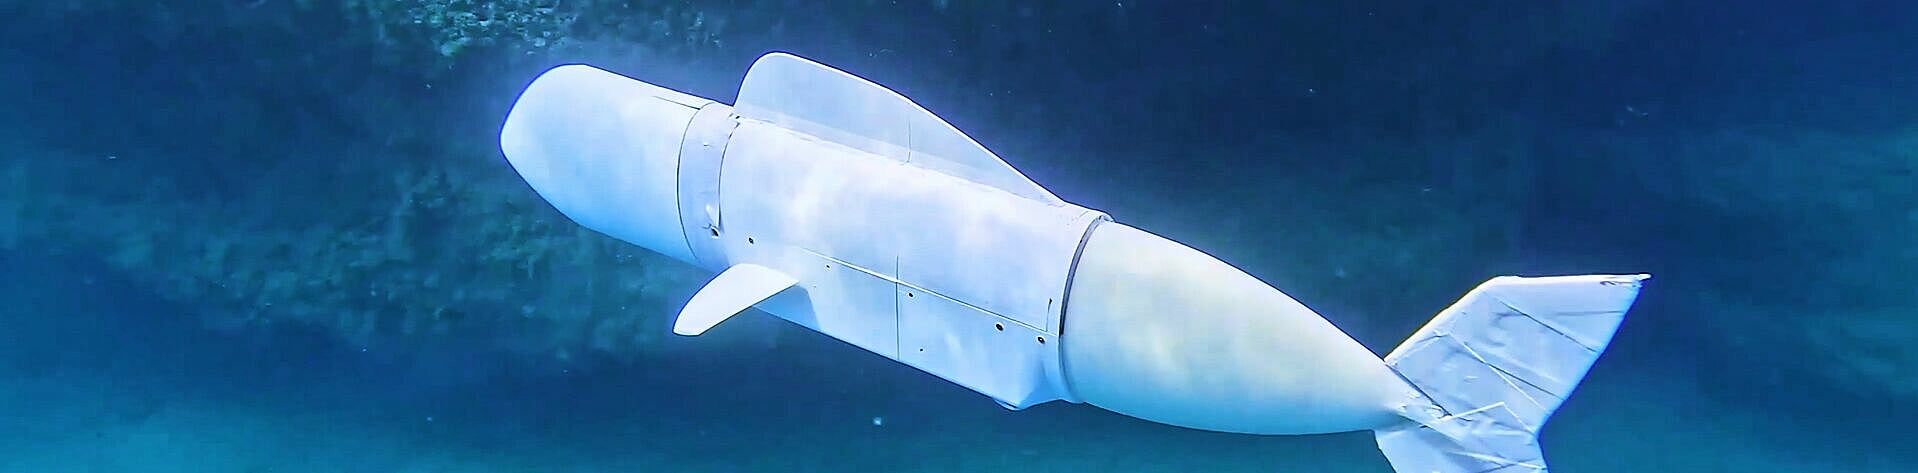 FAULHABER borstelloze motor voor autonome robotvissen onderwatertoepassing